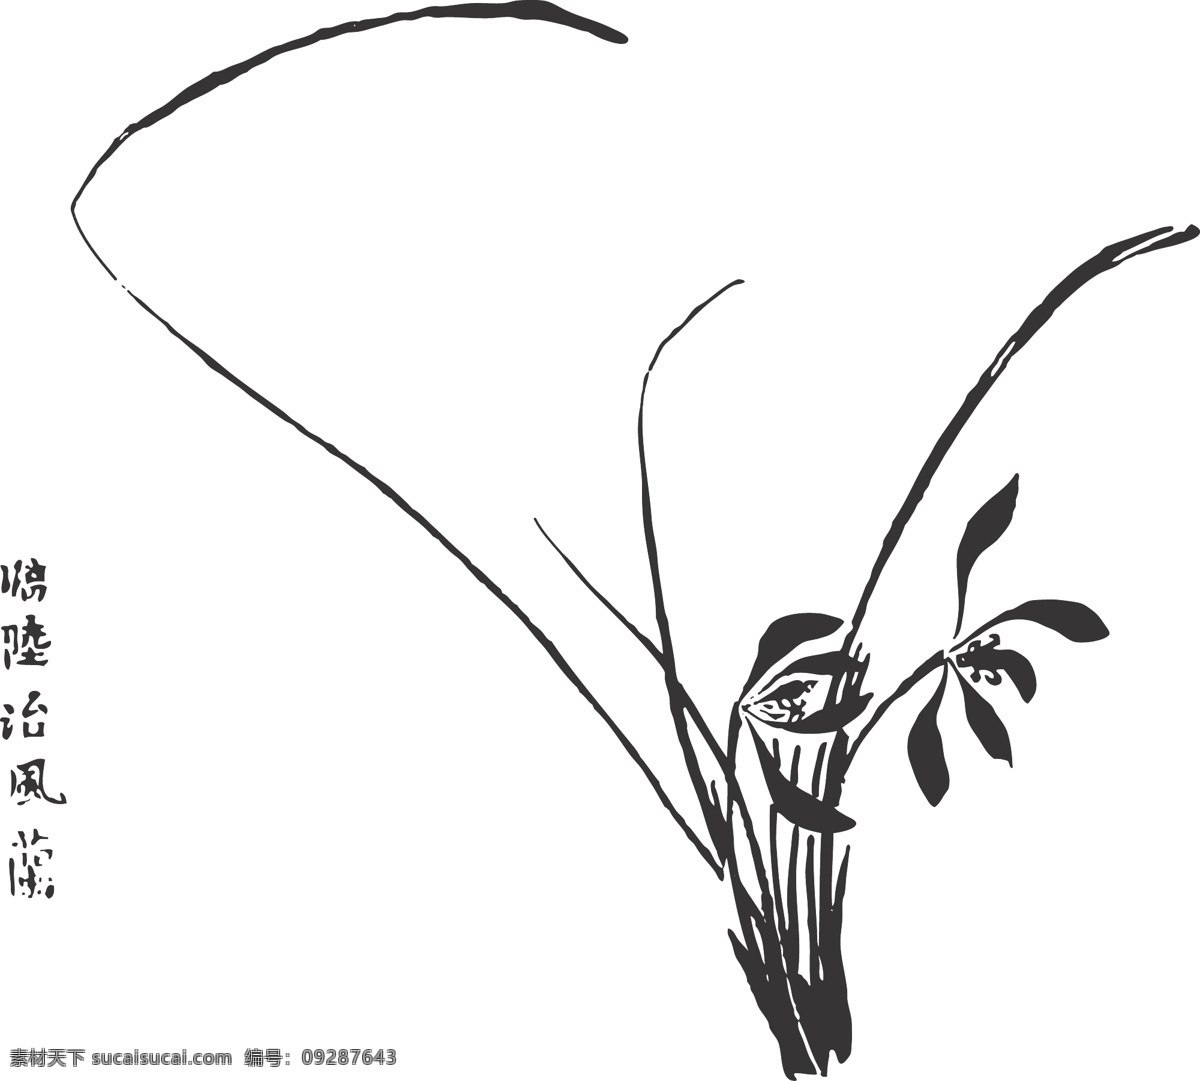 兰花 植物 花卉 观赏 线条 矢量 装饰 插画 白描 质朴文静 淡雅高洁 花卉白描图 生物世界 花草